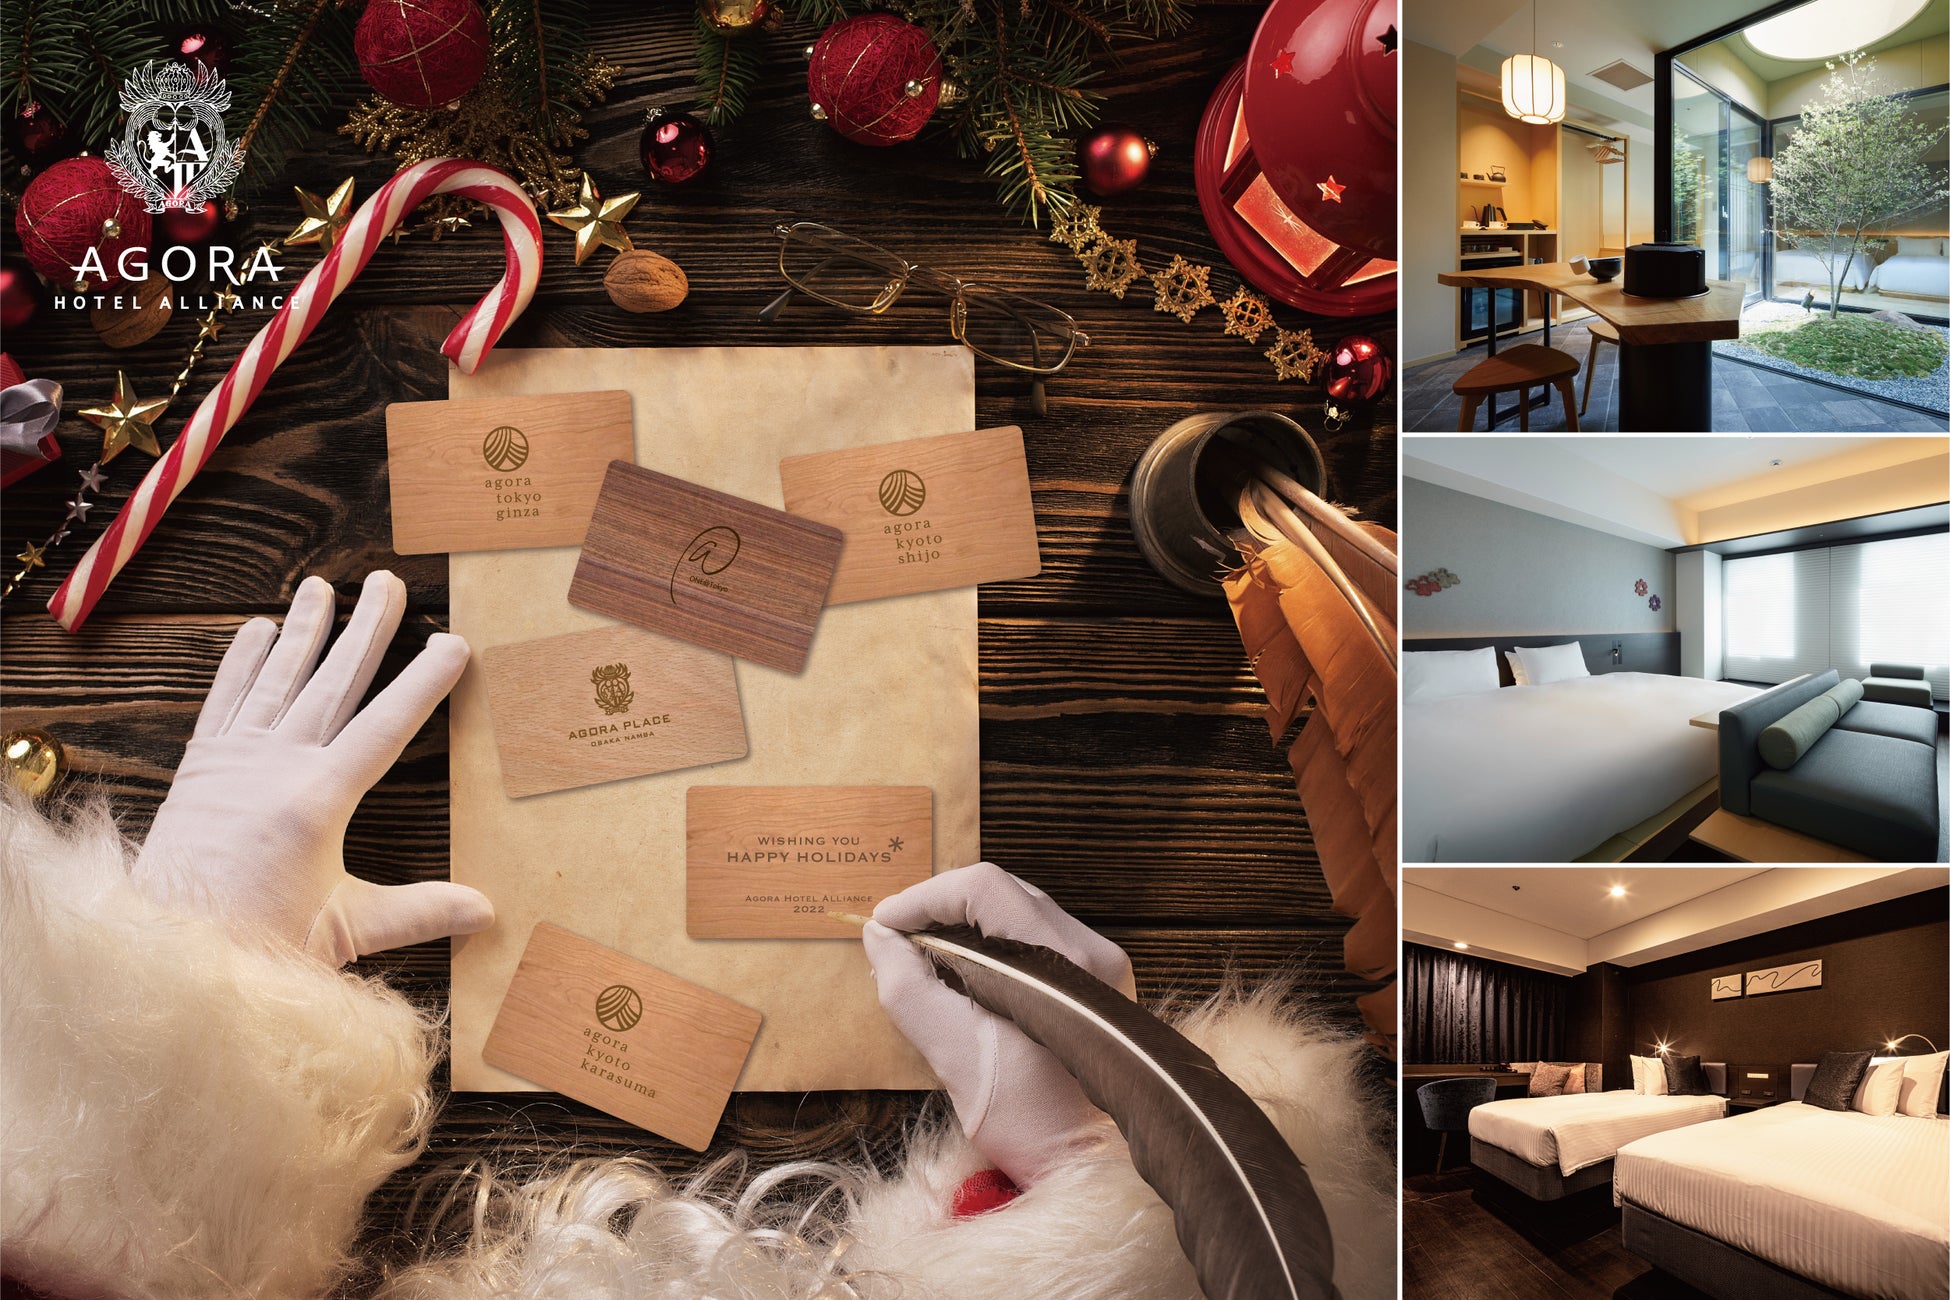 アゴーラ ホテル アライアンス クリスマス限定デザイン ルームキーをプレゼント